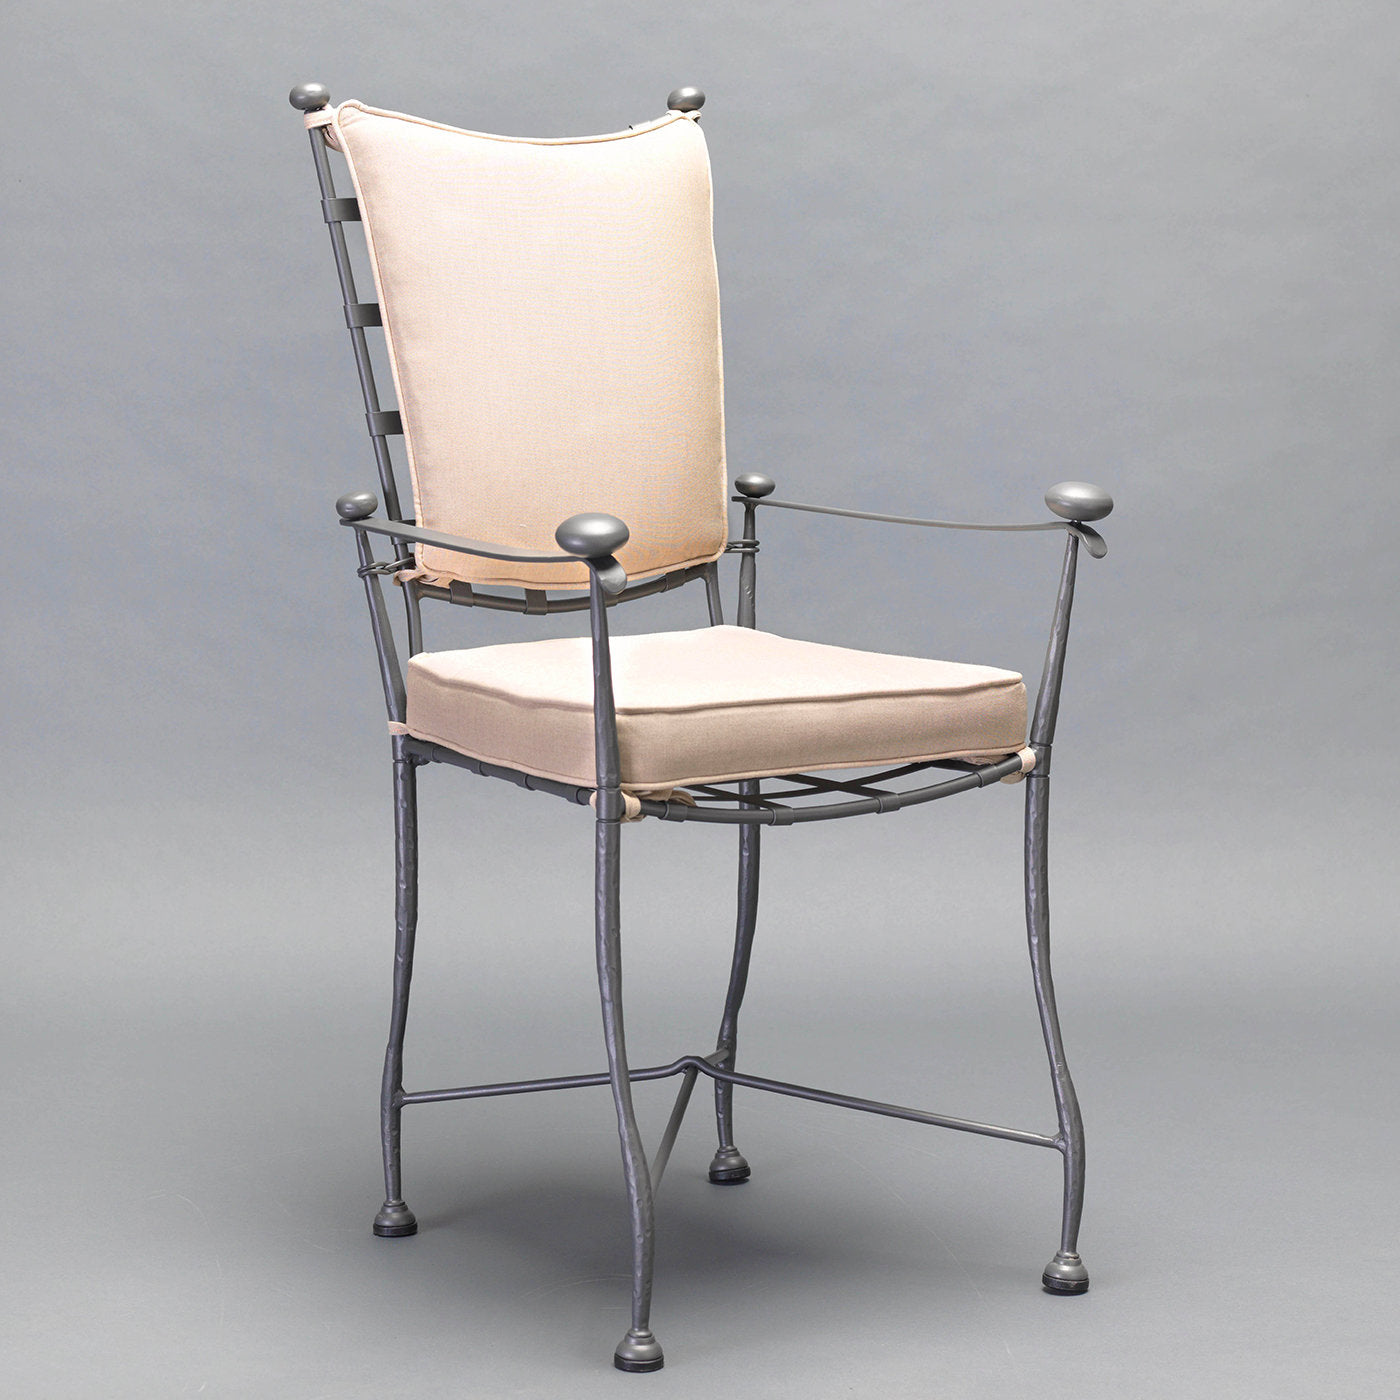 Intreccio Outdoor Chair - Alternative view 1